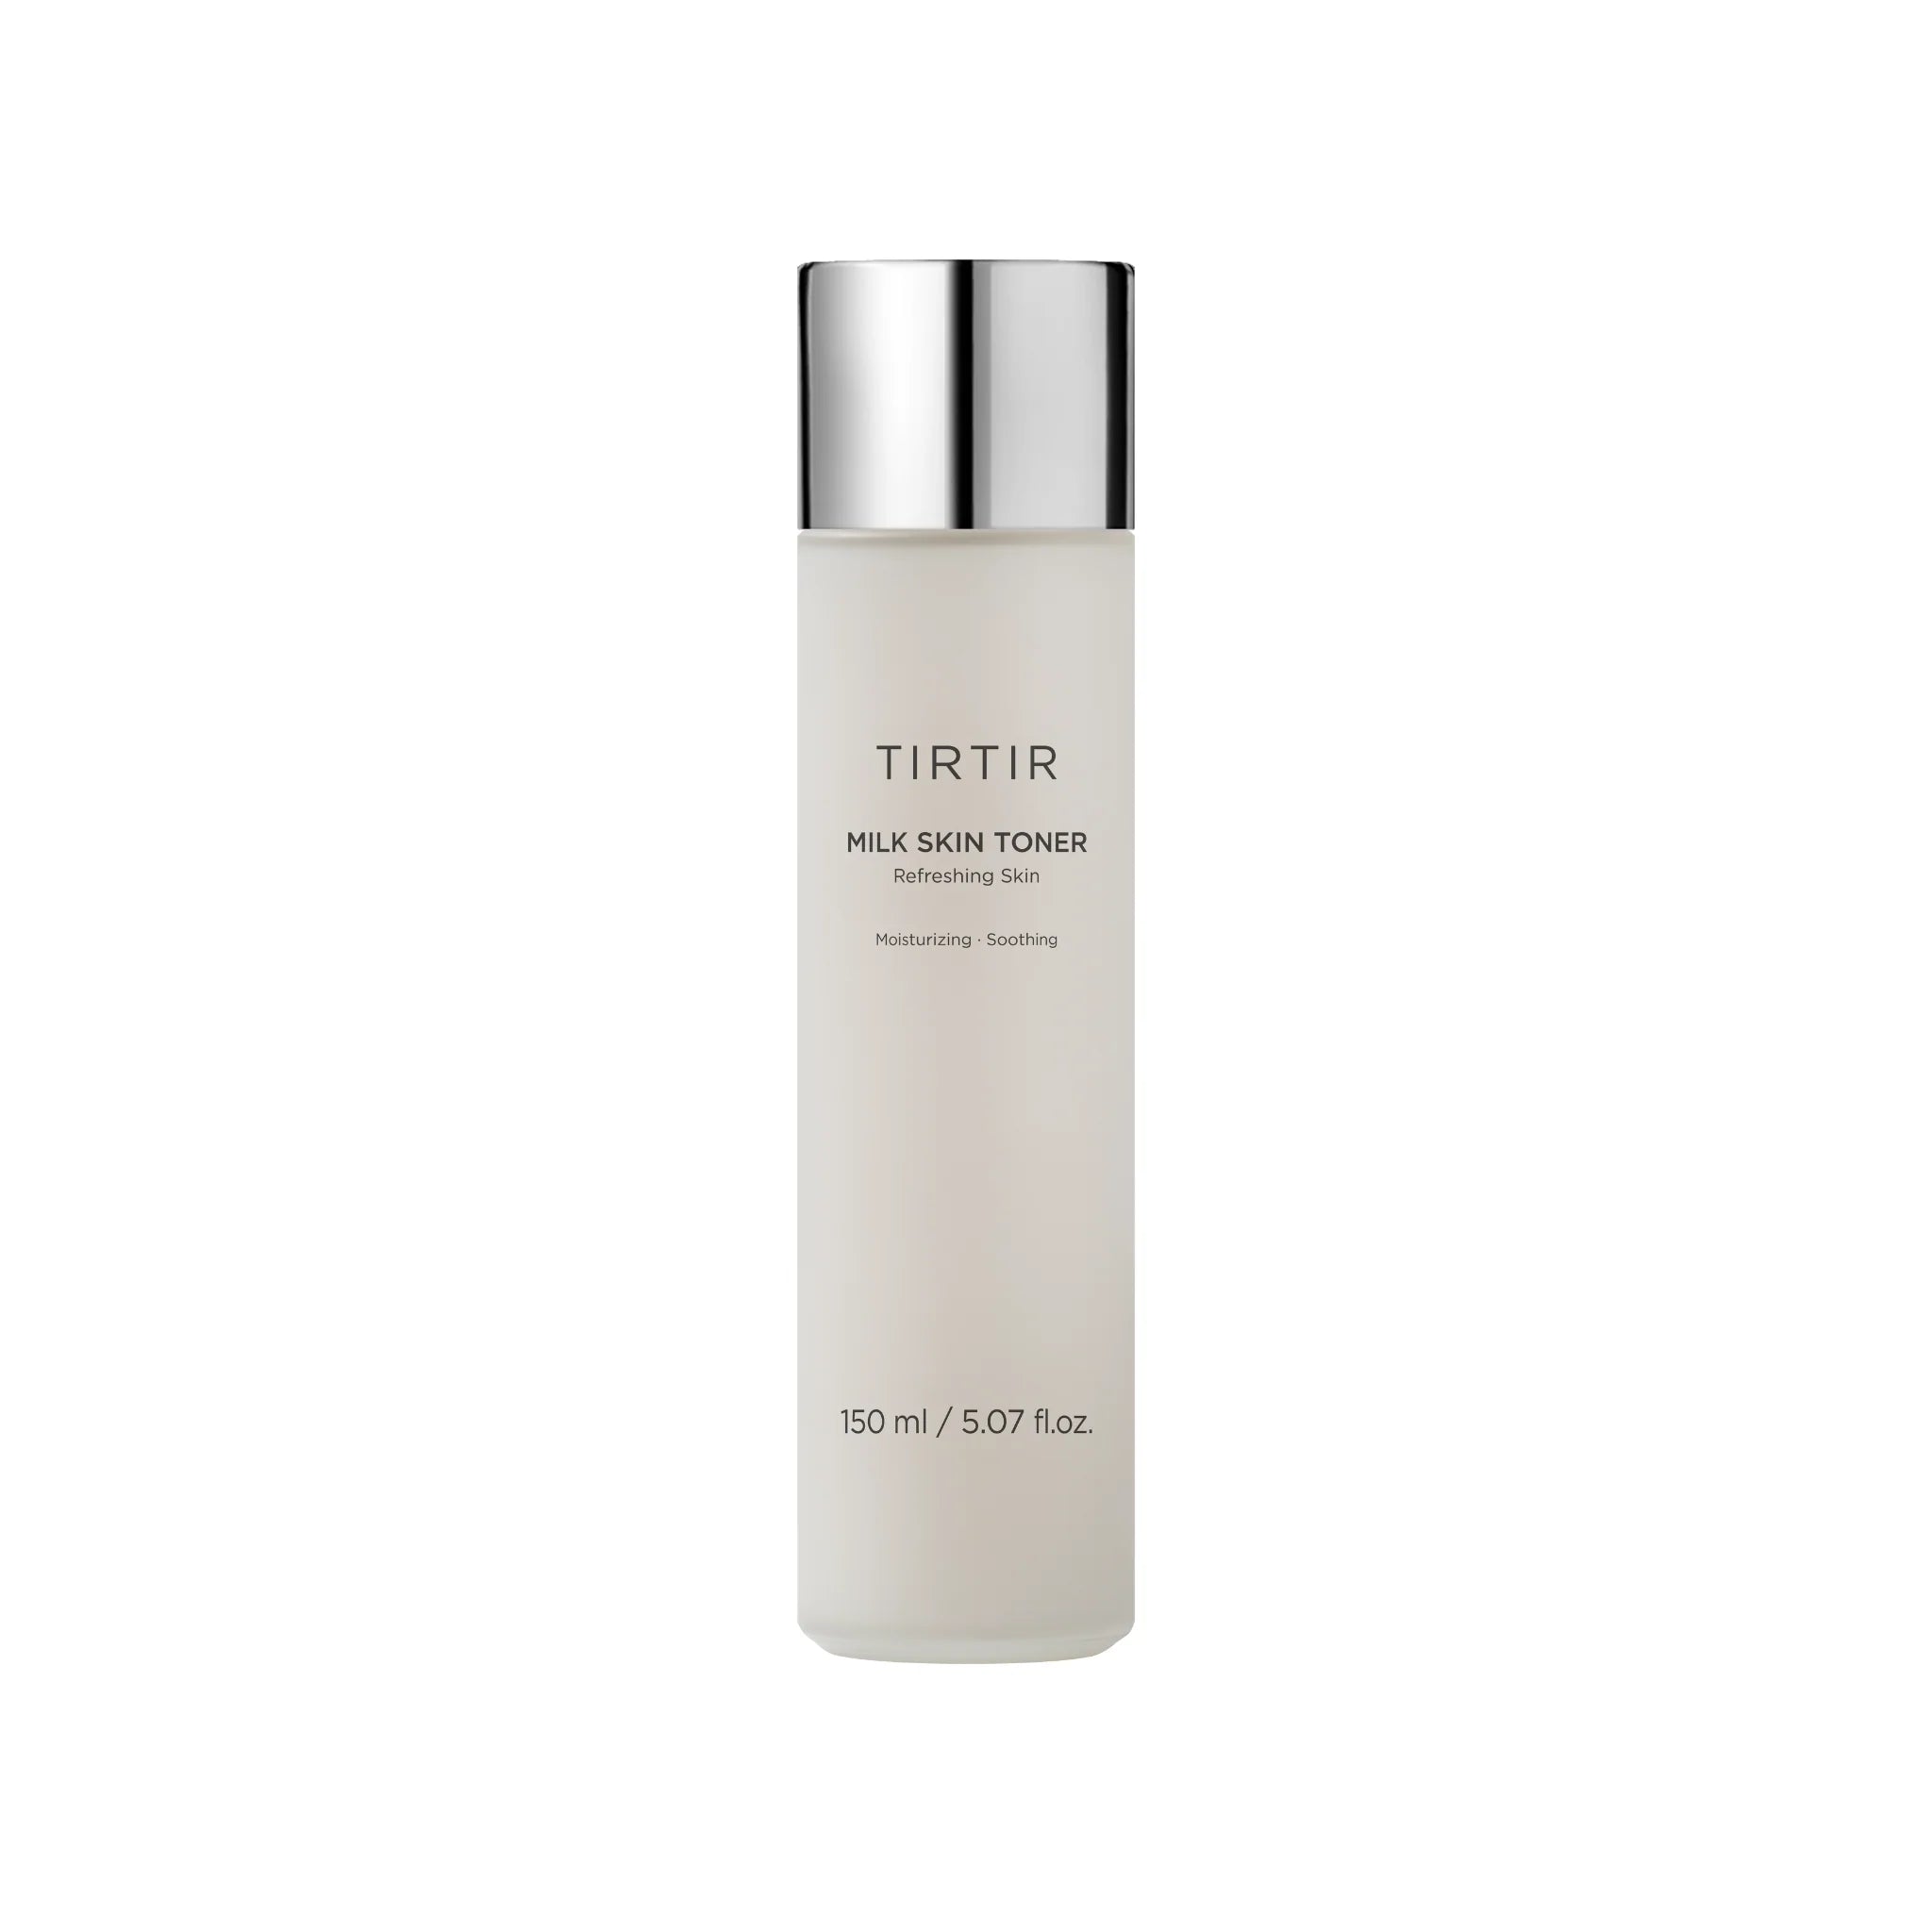 TIRTIR - Milk Skin Toner 150ml